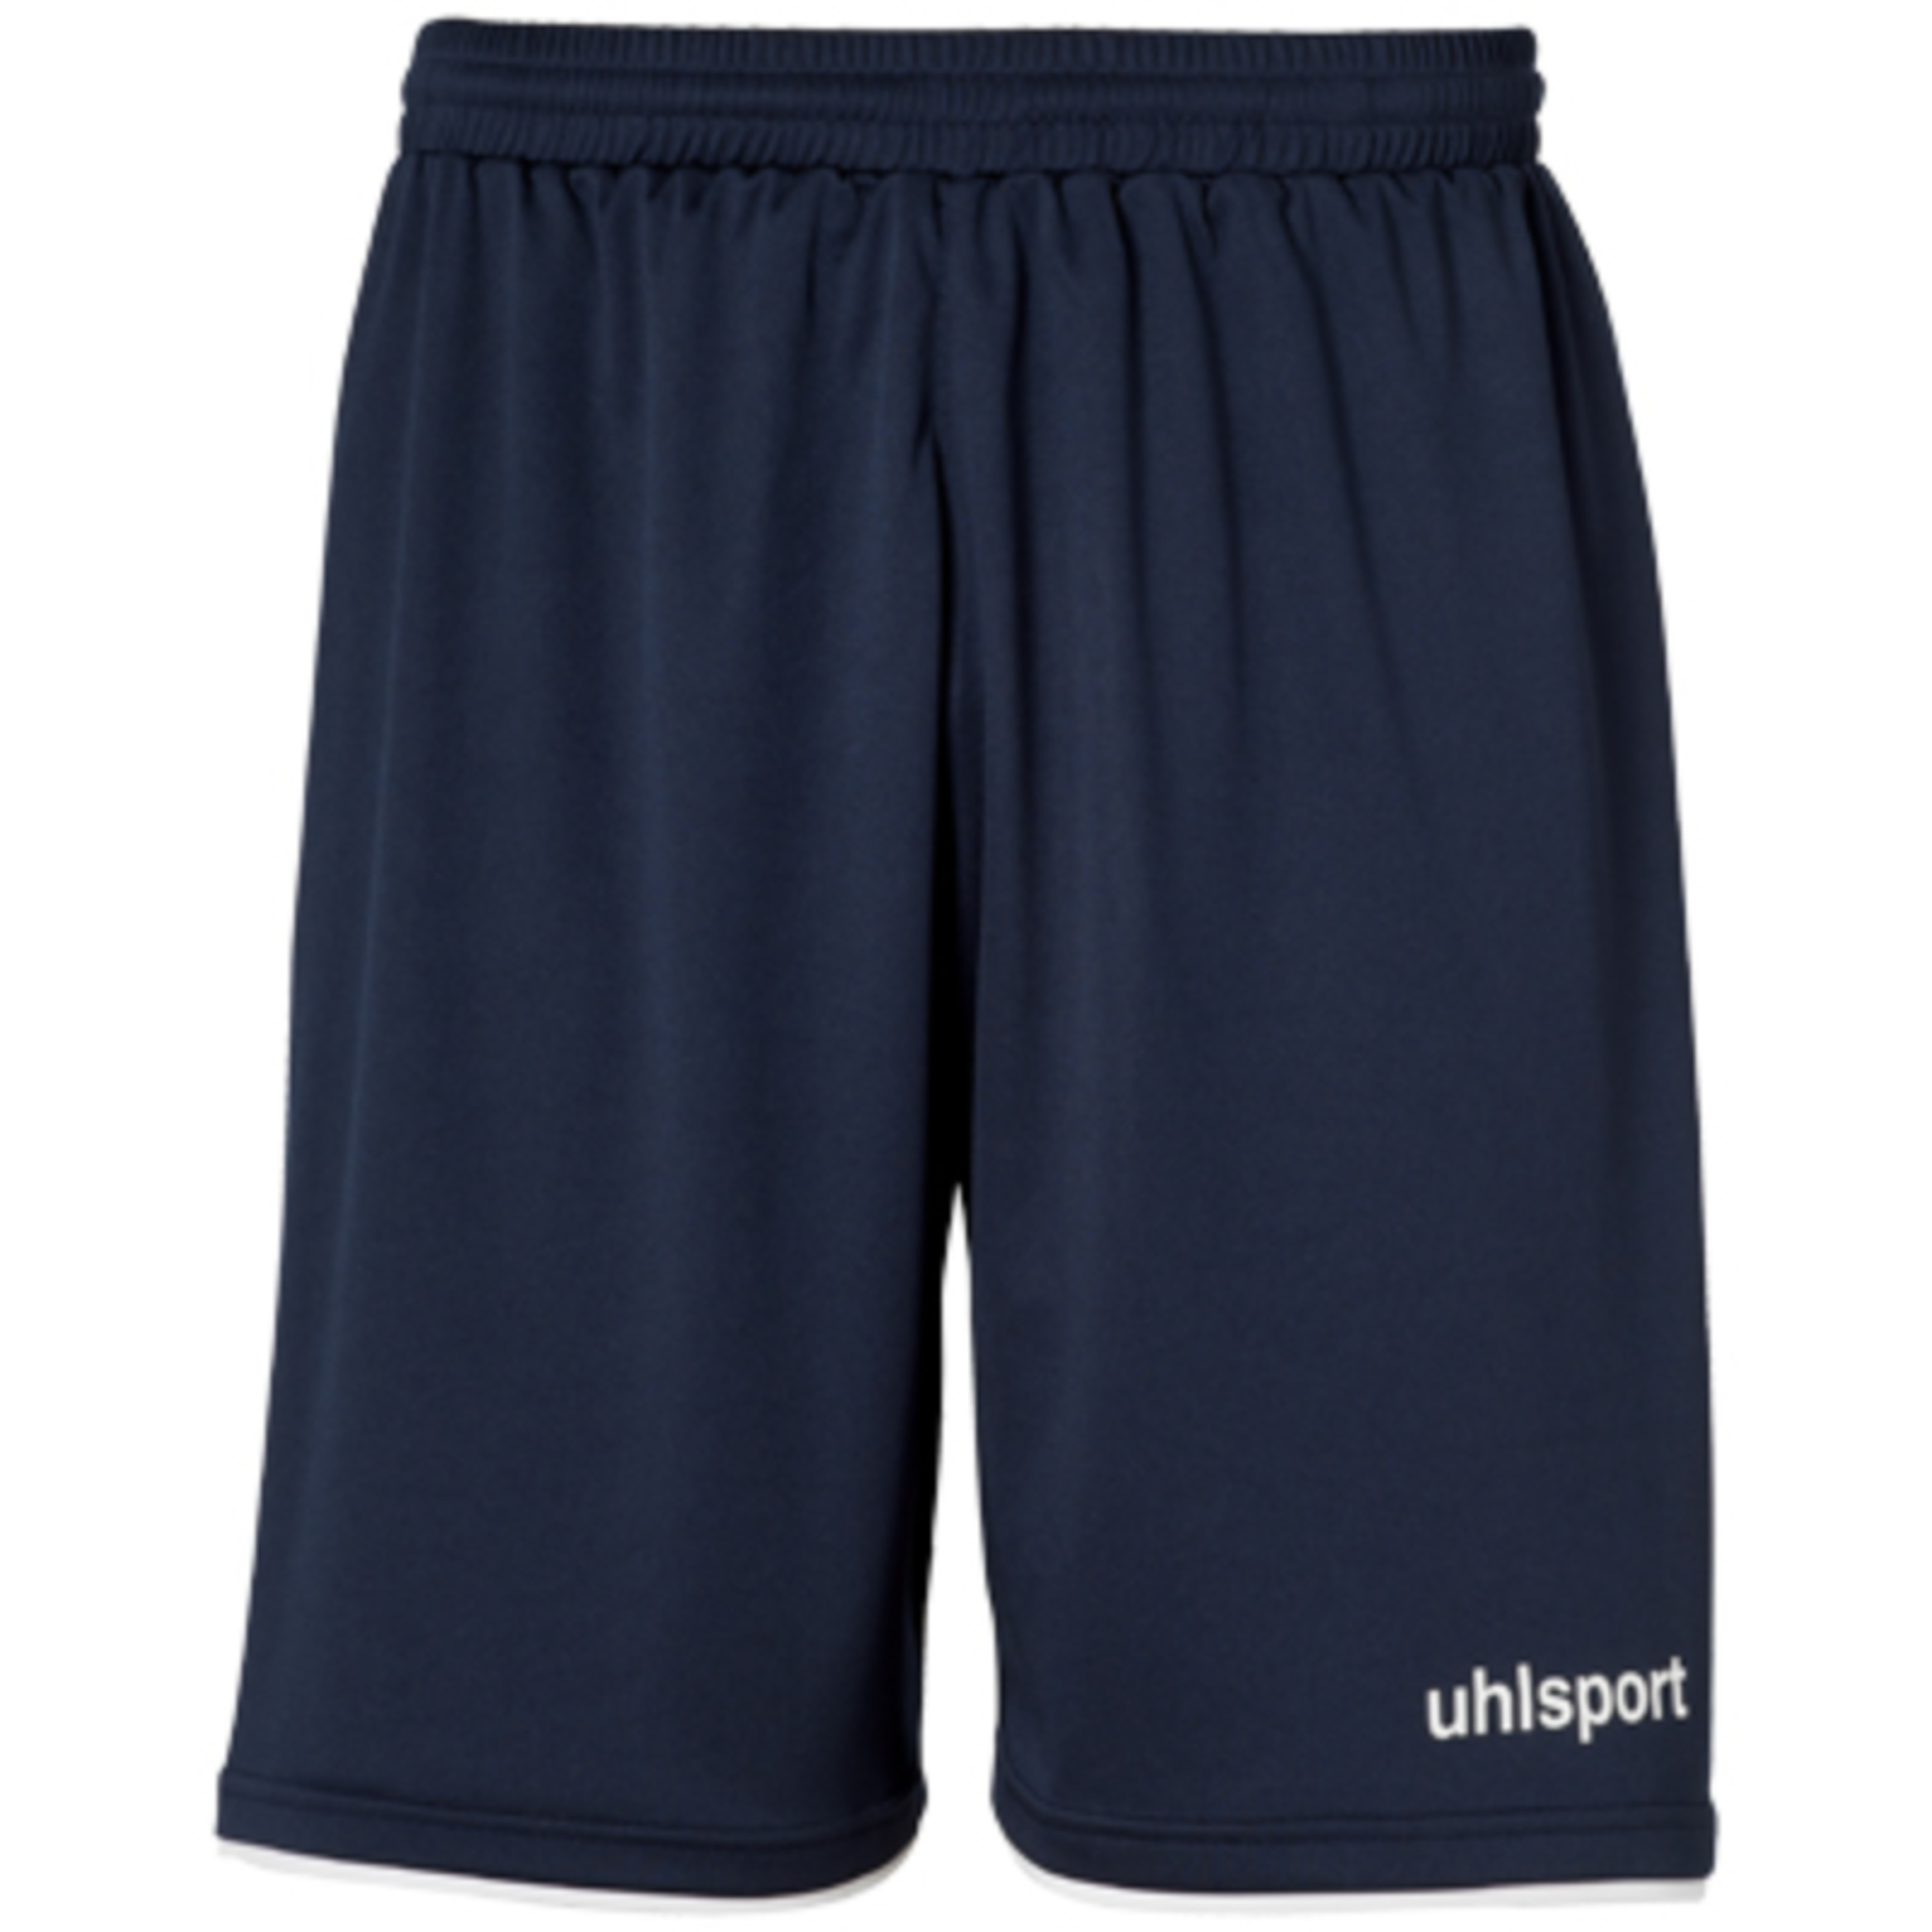 Club Shorts Azul Marino/blanco Uhlsport